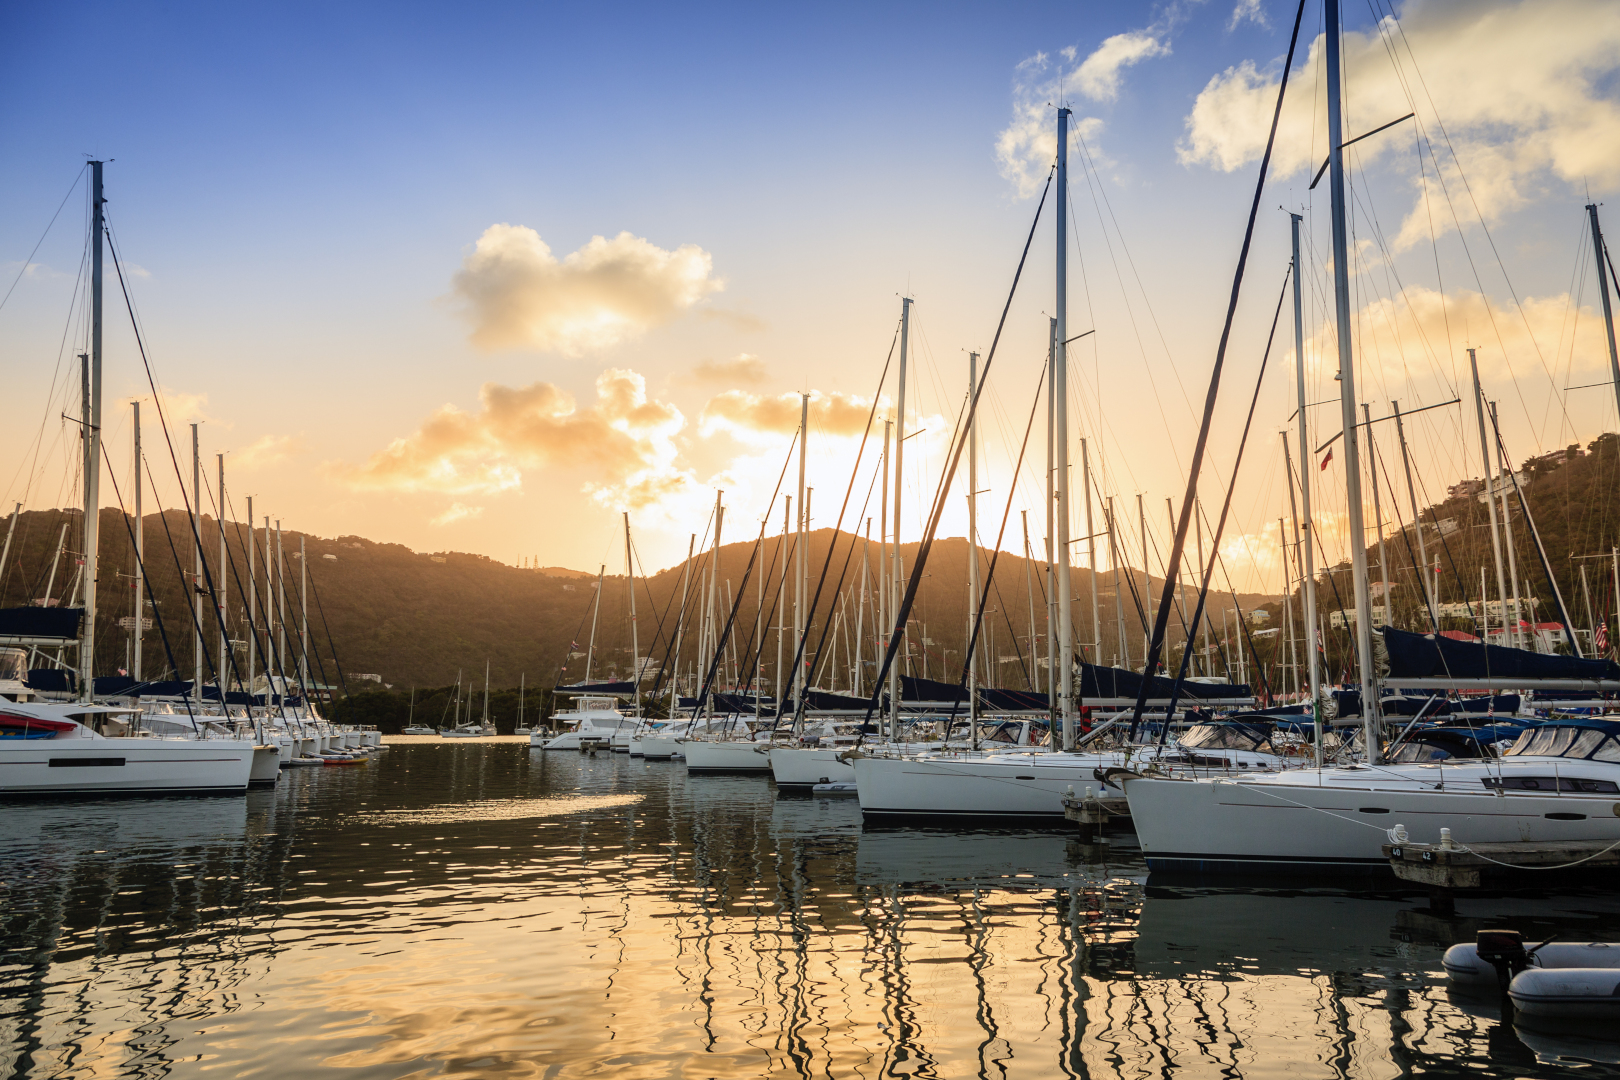 Yachtcharter Karibik Tortola - Einkaufsmöglichkeiten